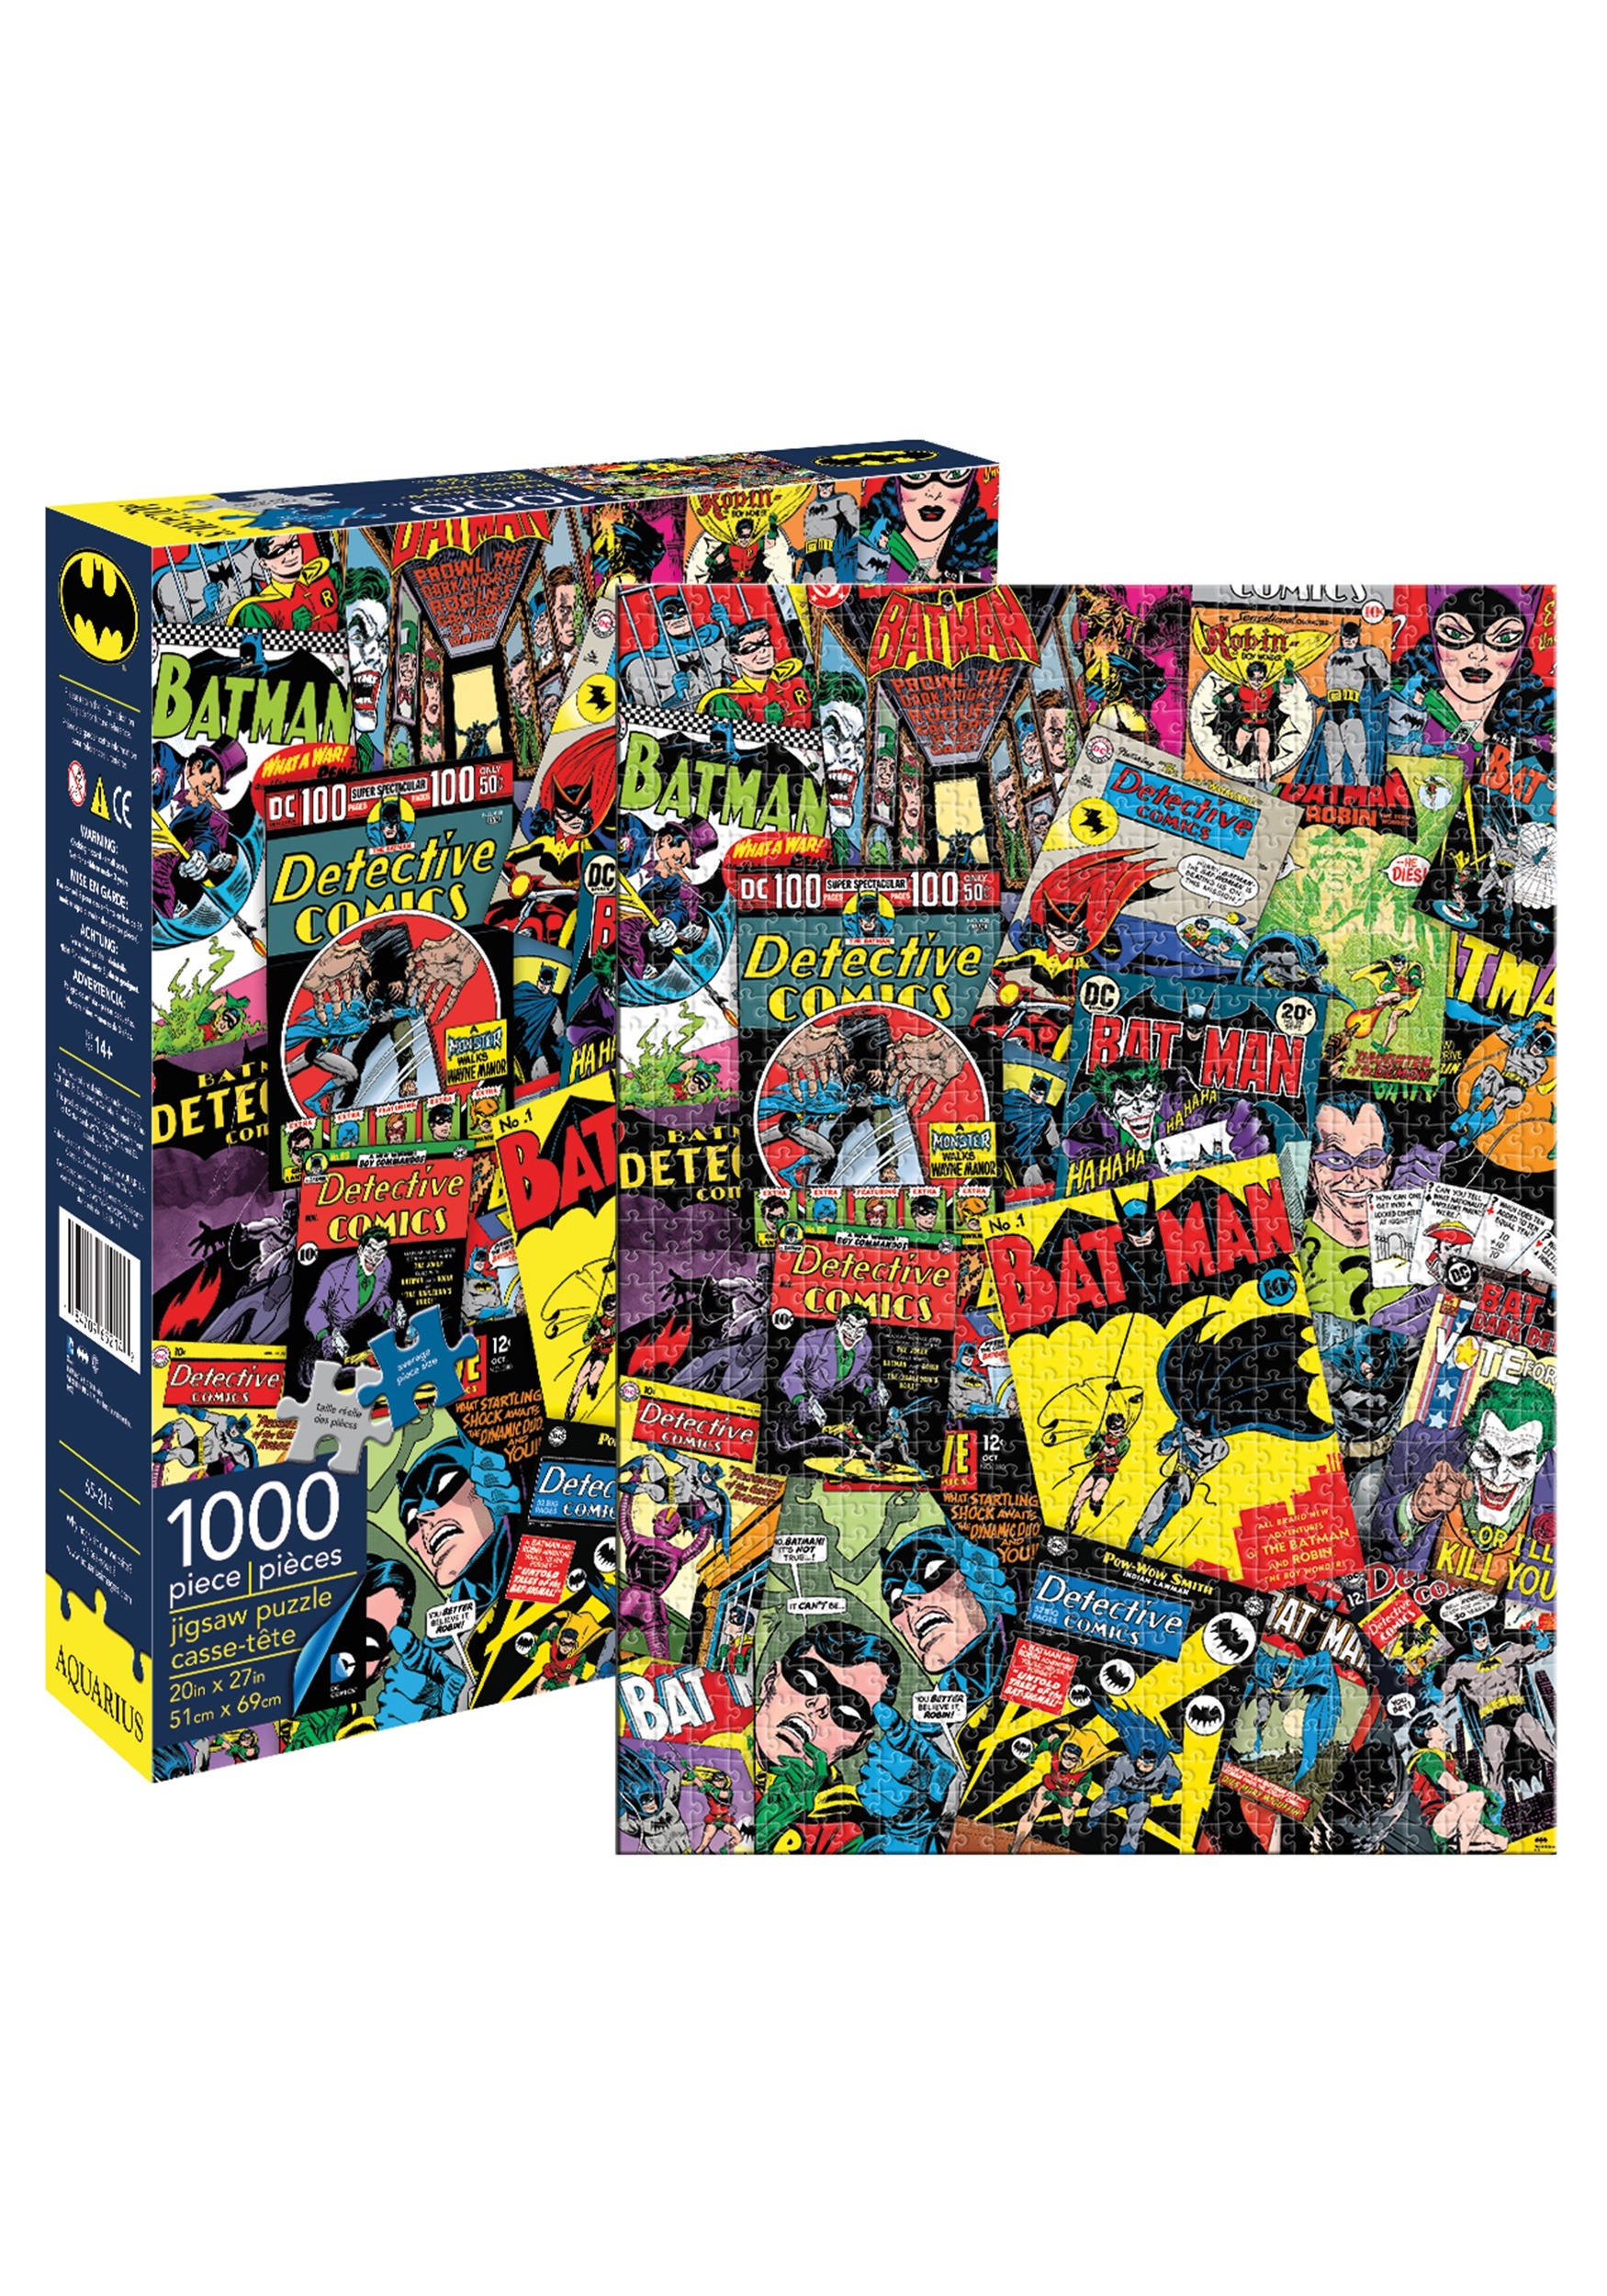 1000 Piece DC Comics Batman Collage Puzzle